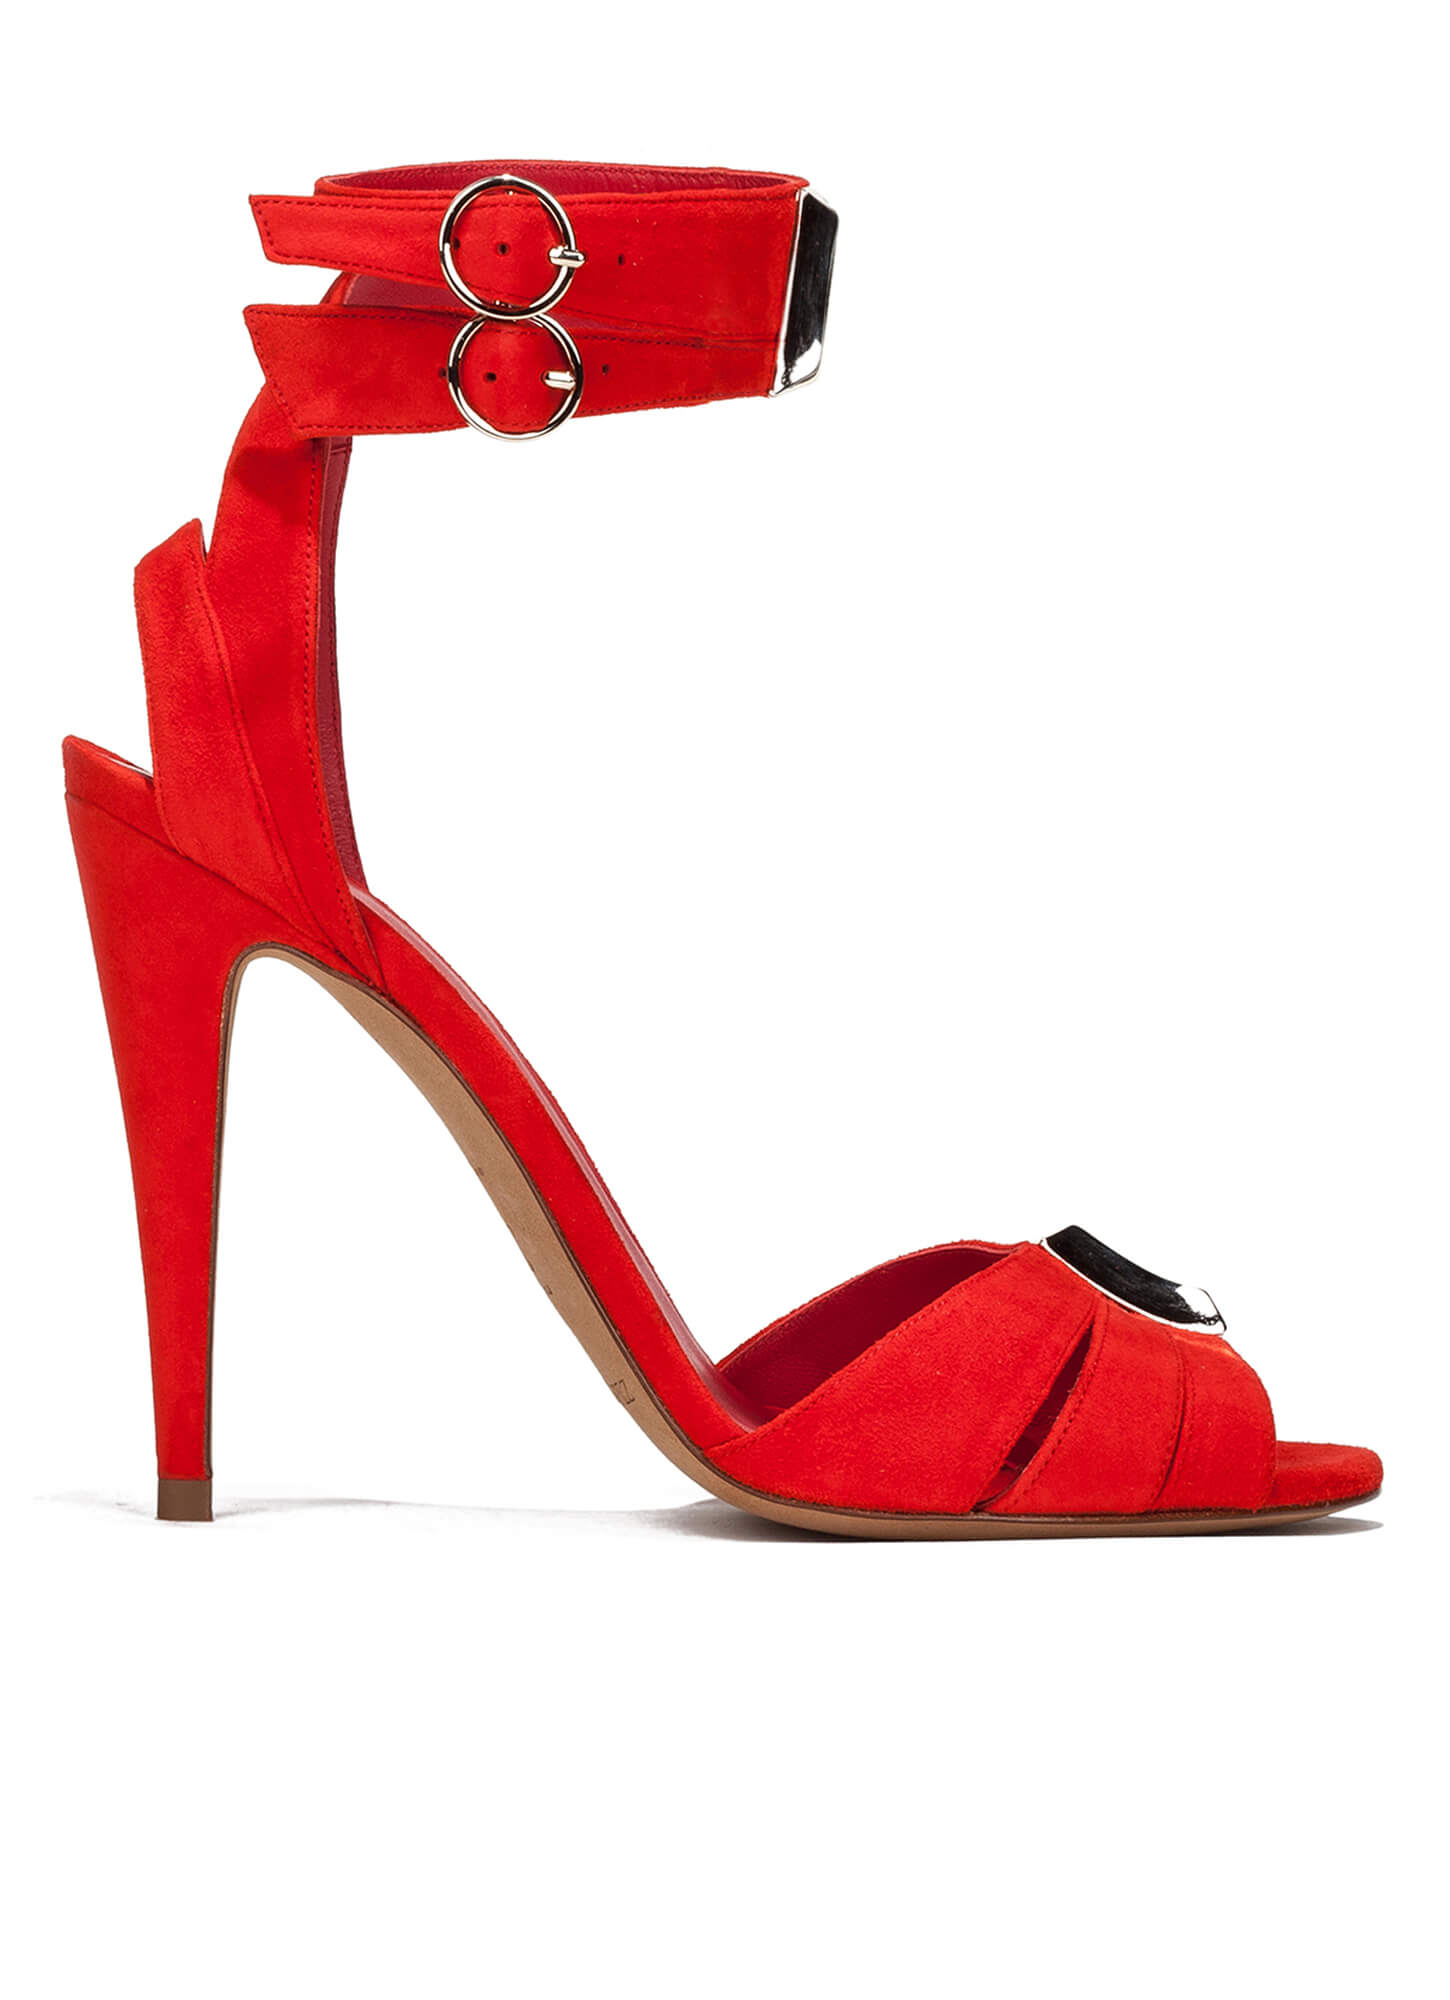 High heel sandals in red suede - online shoe store Pura Lopez . PURA LOPEZ